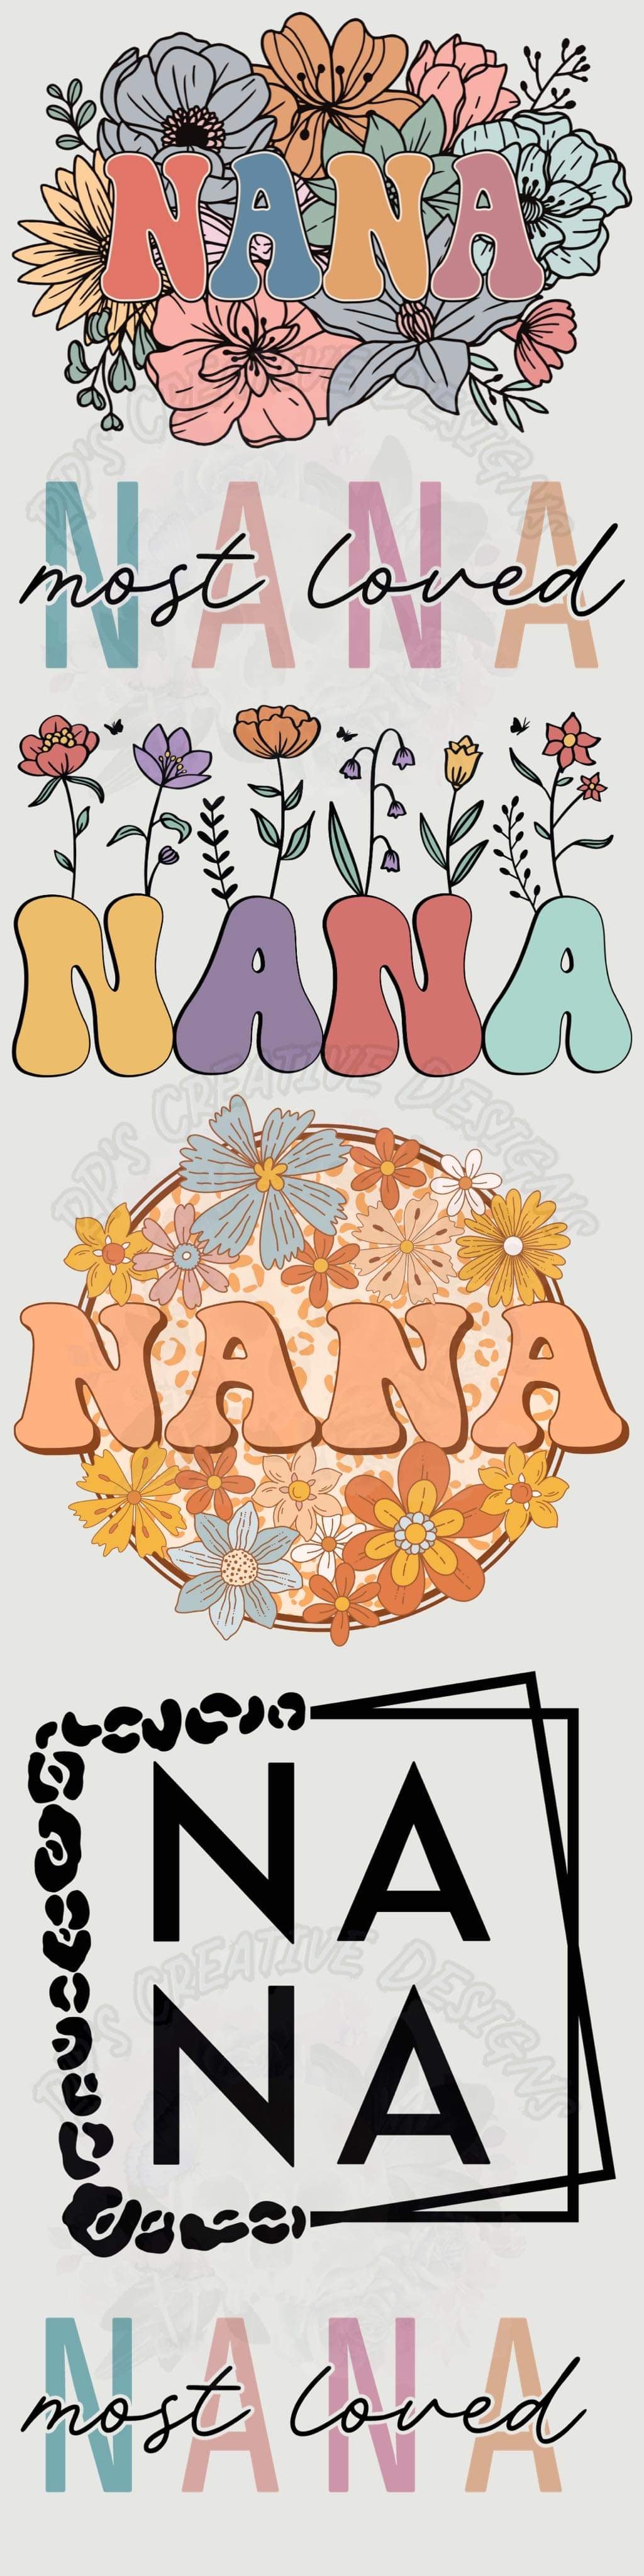 Nana Gang Sheet